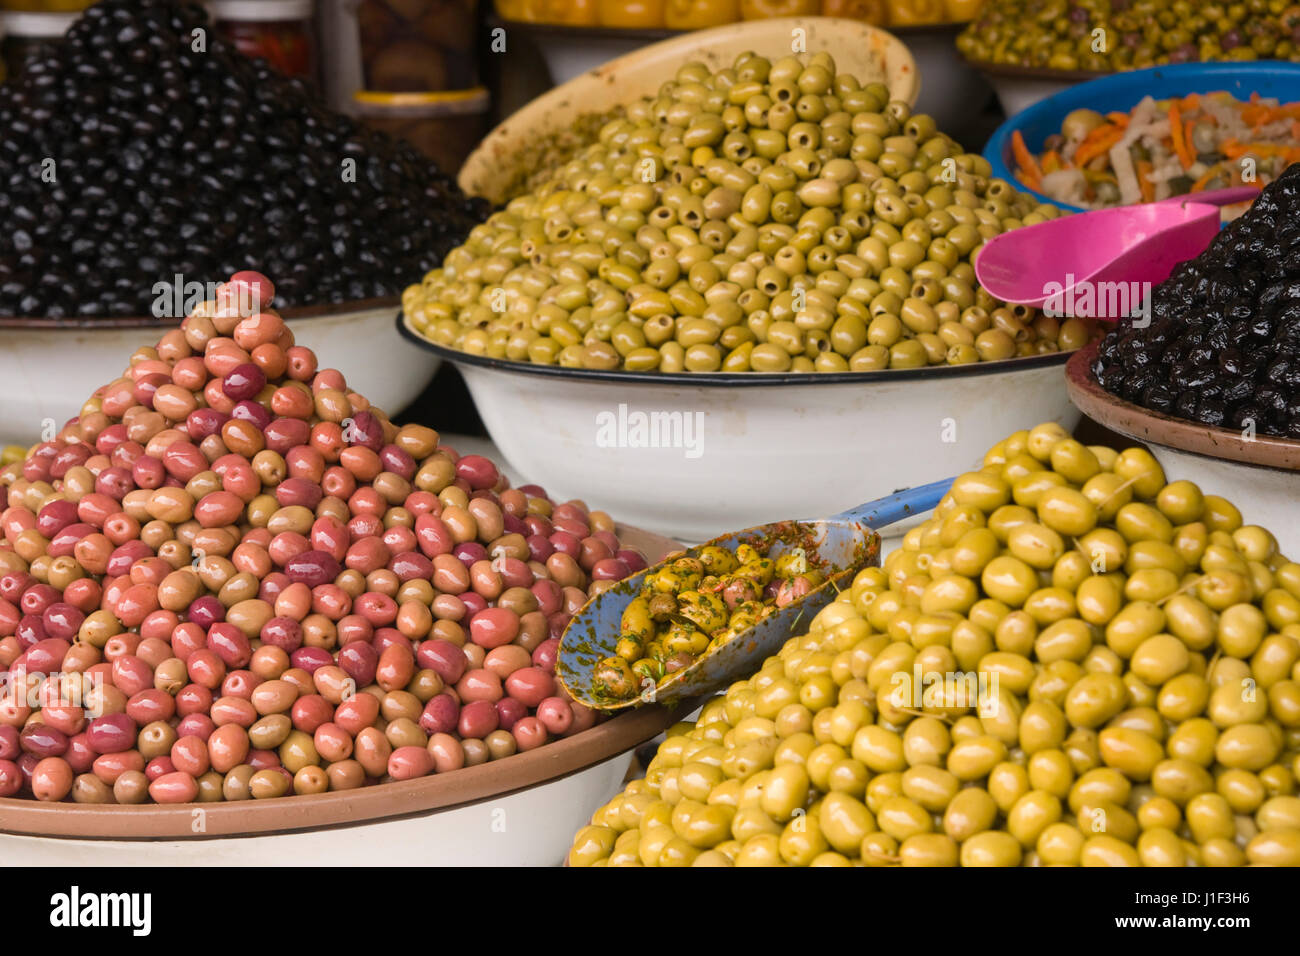 Pressione di stallo di mercato la vendita di olive fresche e prodotti alimentari in bottiglia nella principale souk di Marrakech, Marocco. Foto Stock